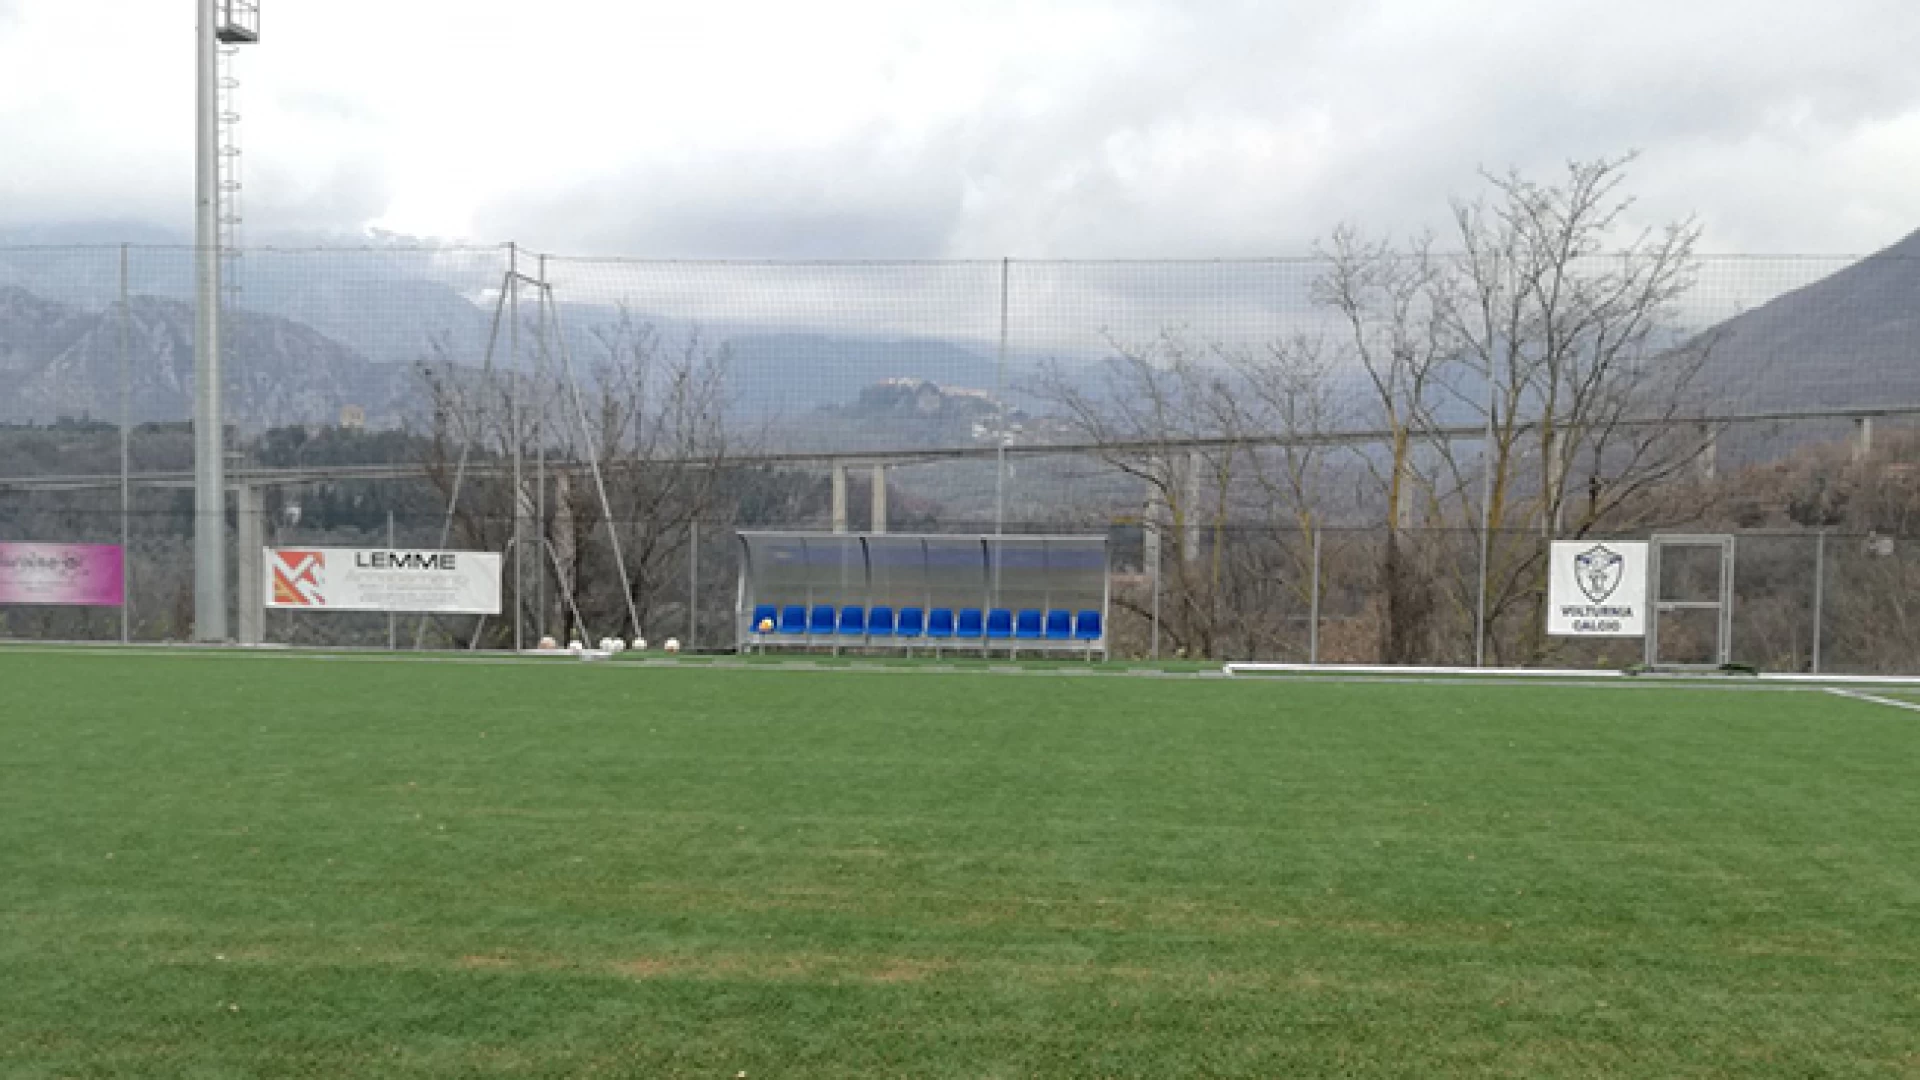 Calcio giovanile: la Volturnia Calcio e la San Leucio lanciano il progetto per una nuova scuola calcio. Al via l'open day di prova.